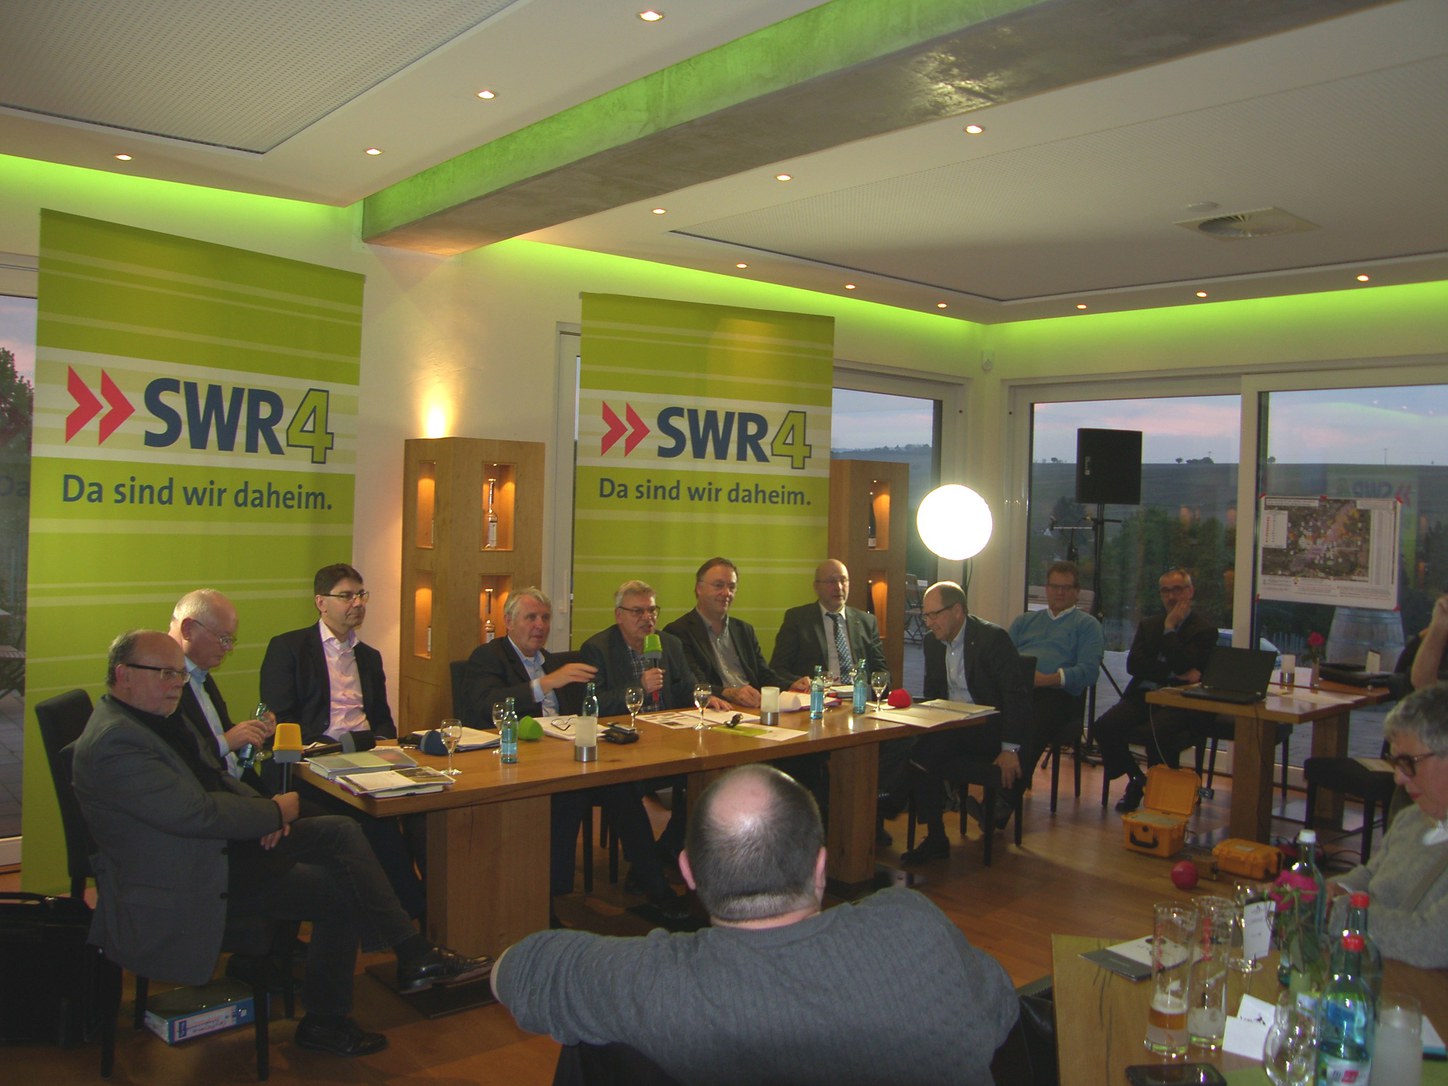 Sendung des SWR 4 im Weingut Vögeli: pro und contra auf dem Podium. Foto: Pfalz-Express/Ahme